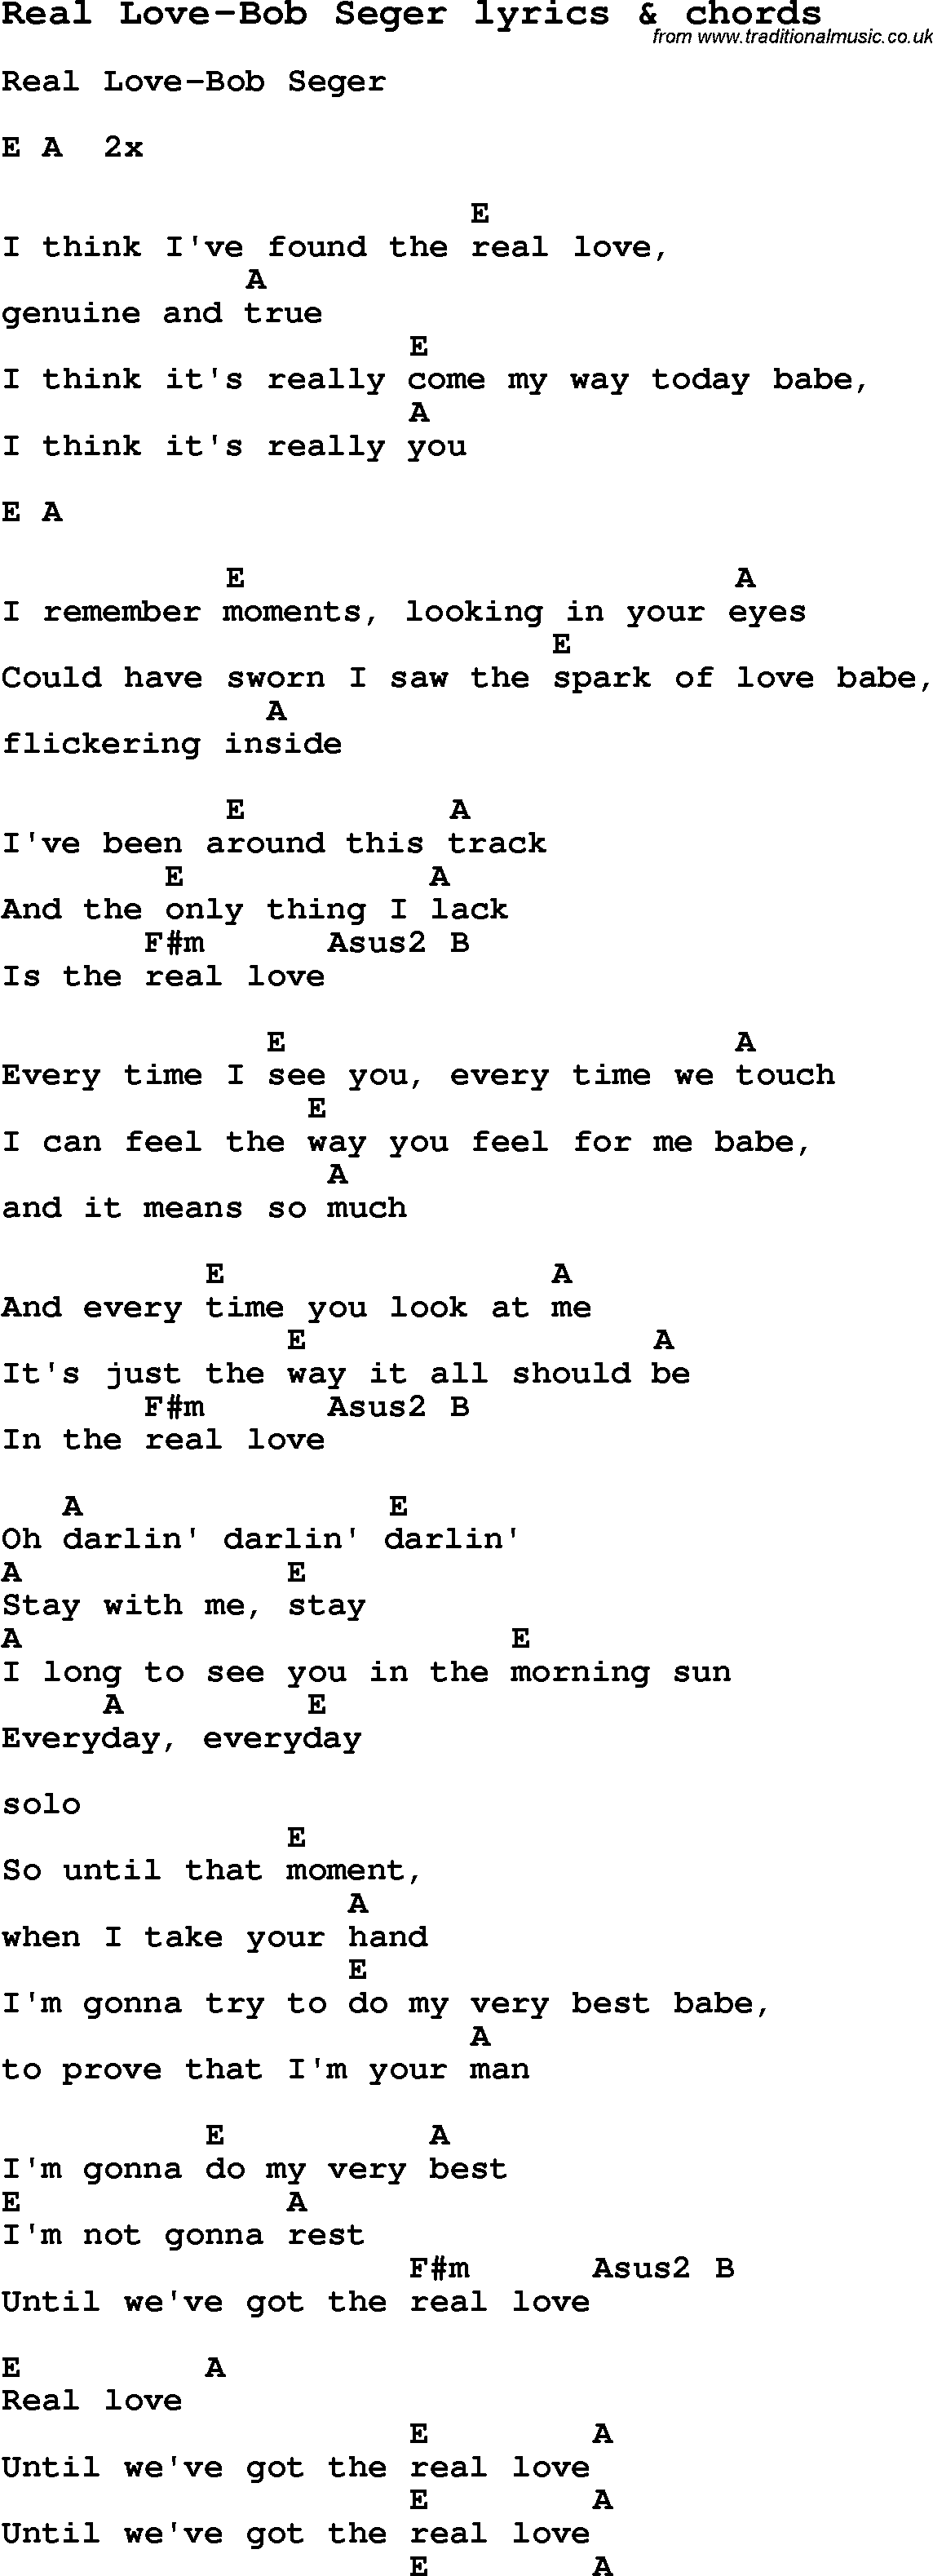 Love Song Lyrics for: Real Love-Bob Seger with chords for Ukulele, Guitar Banjo etc.